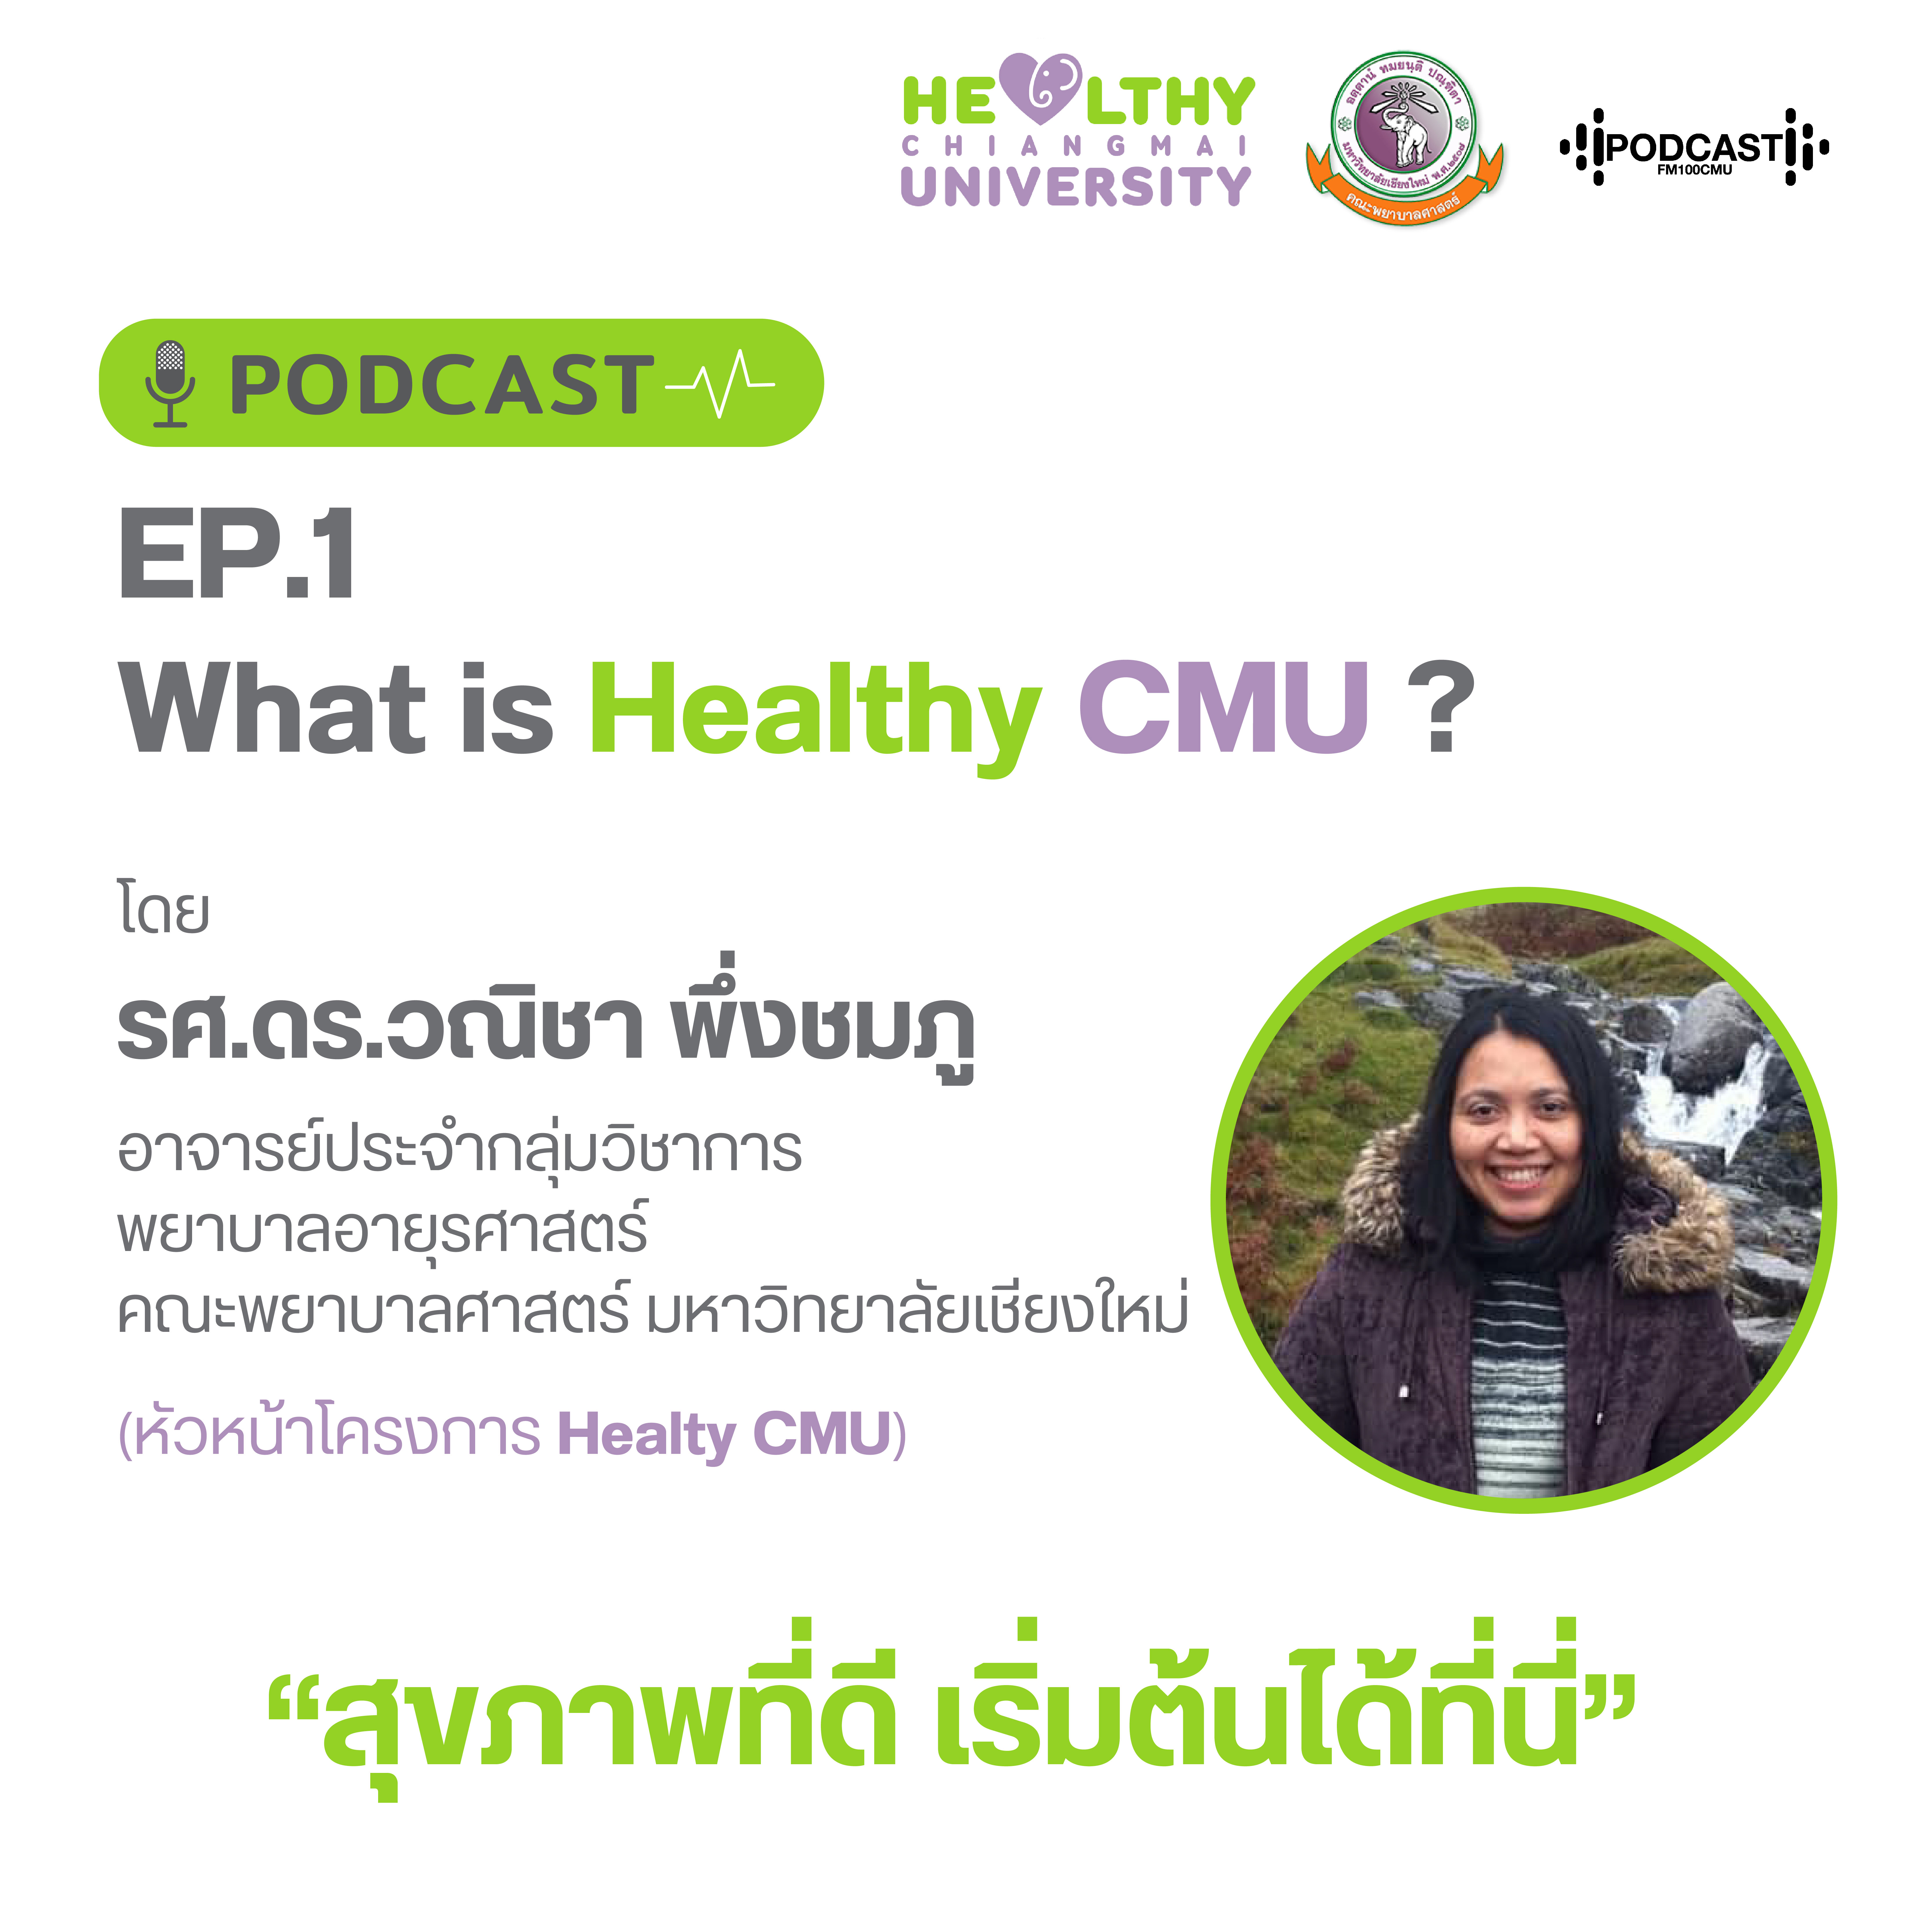 Podcast Healthy Ep.1 ทำความรู้จักกับโครงการ Healthy CMU